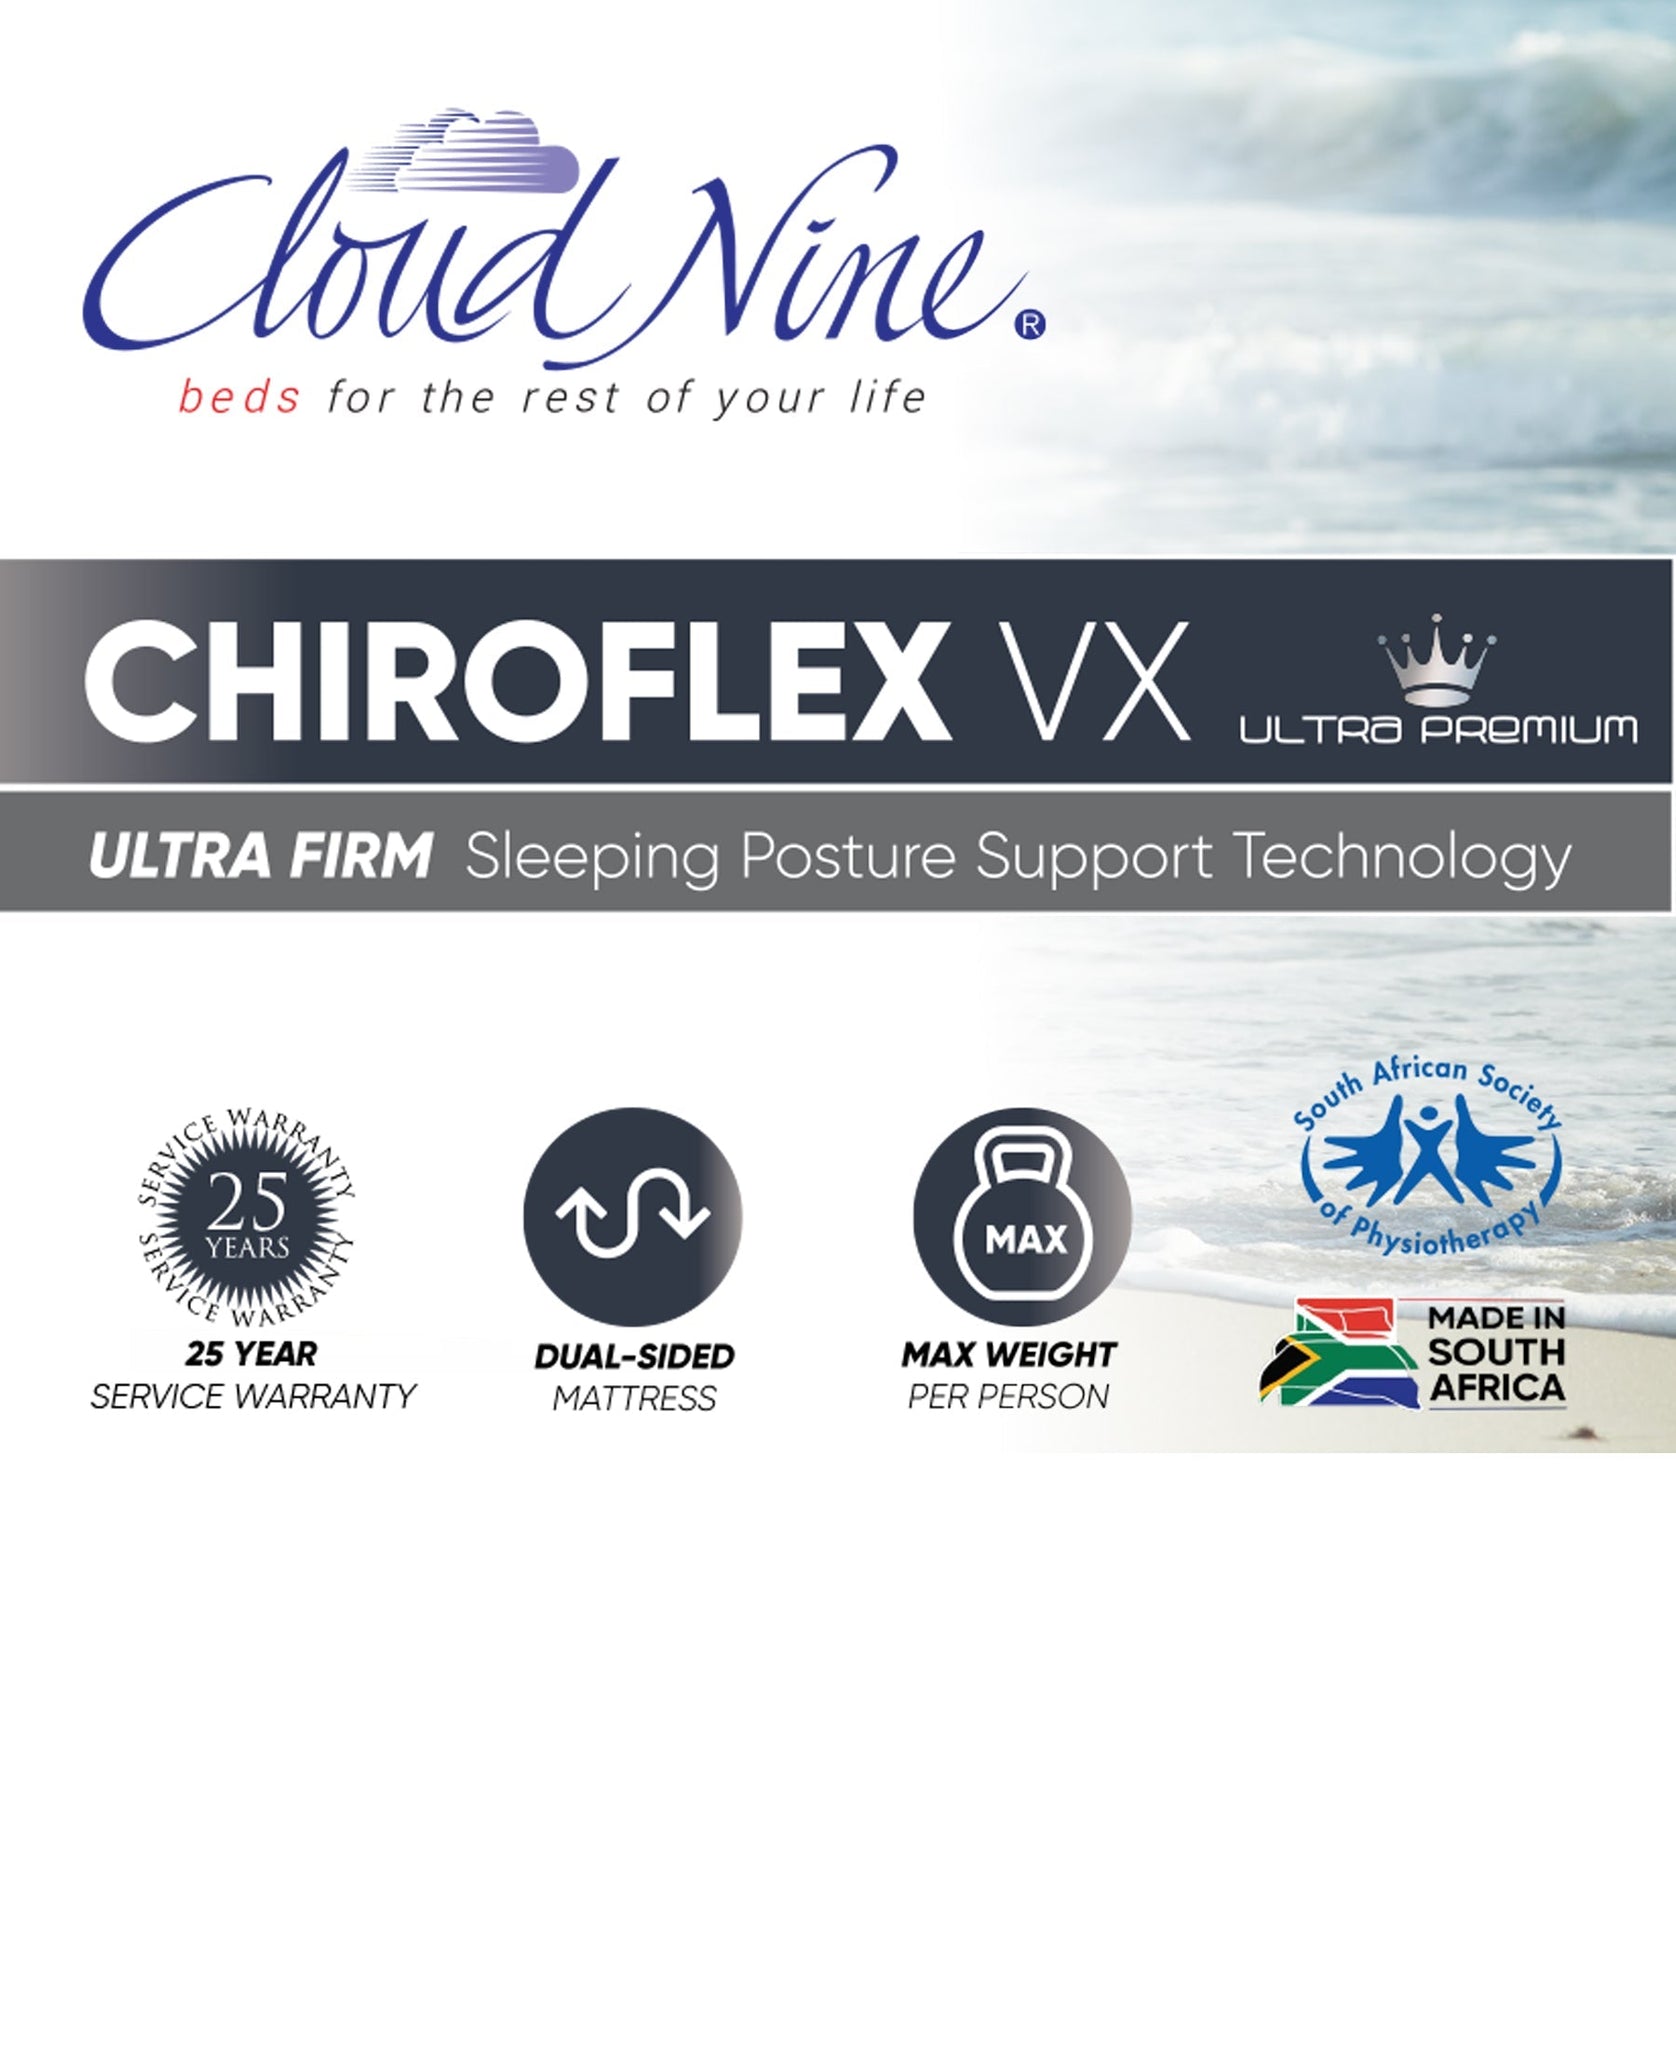 Cloud Nine Chiroflex VX Bed 3/4